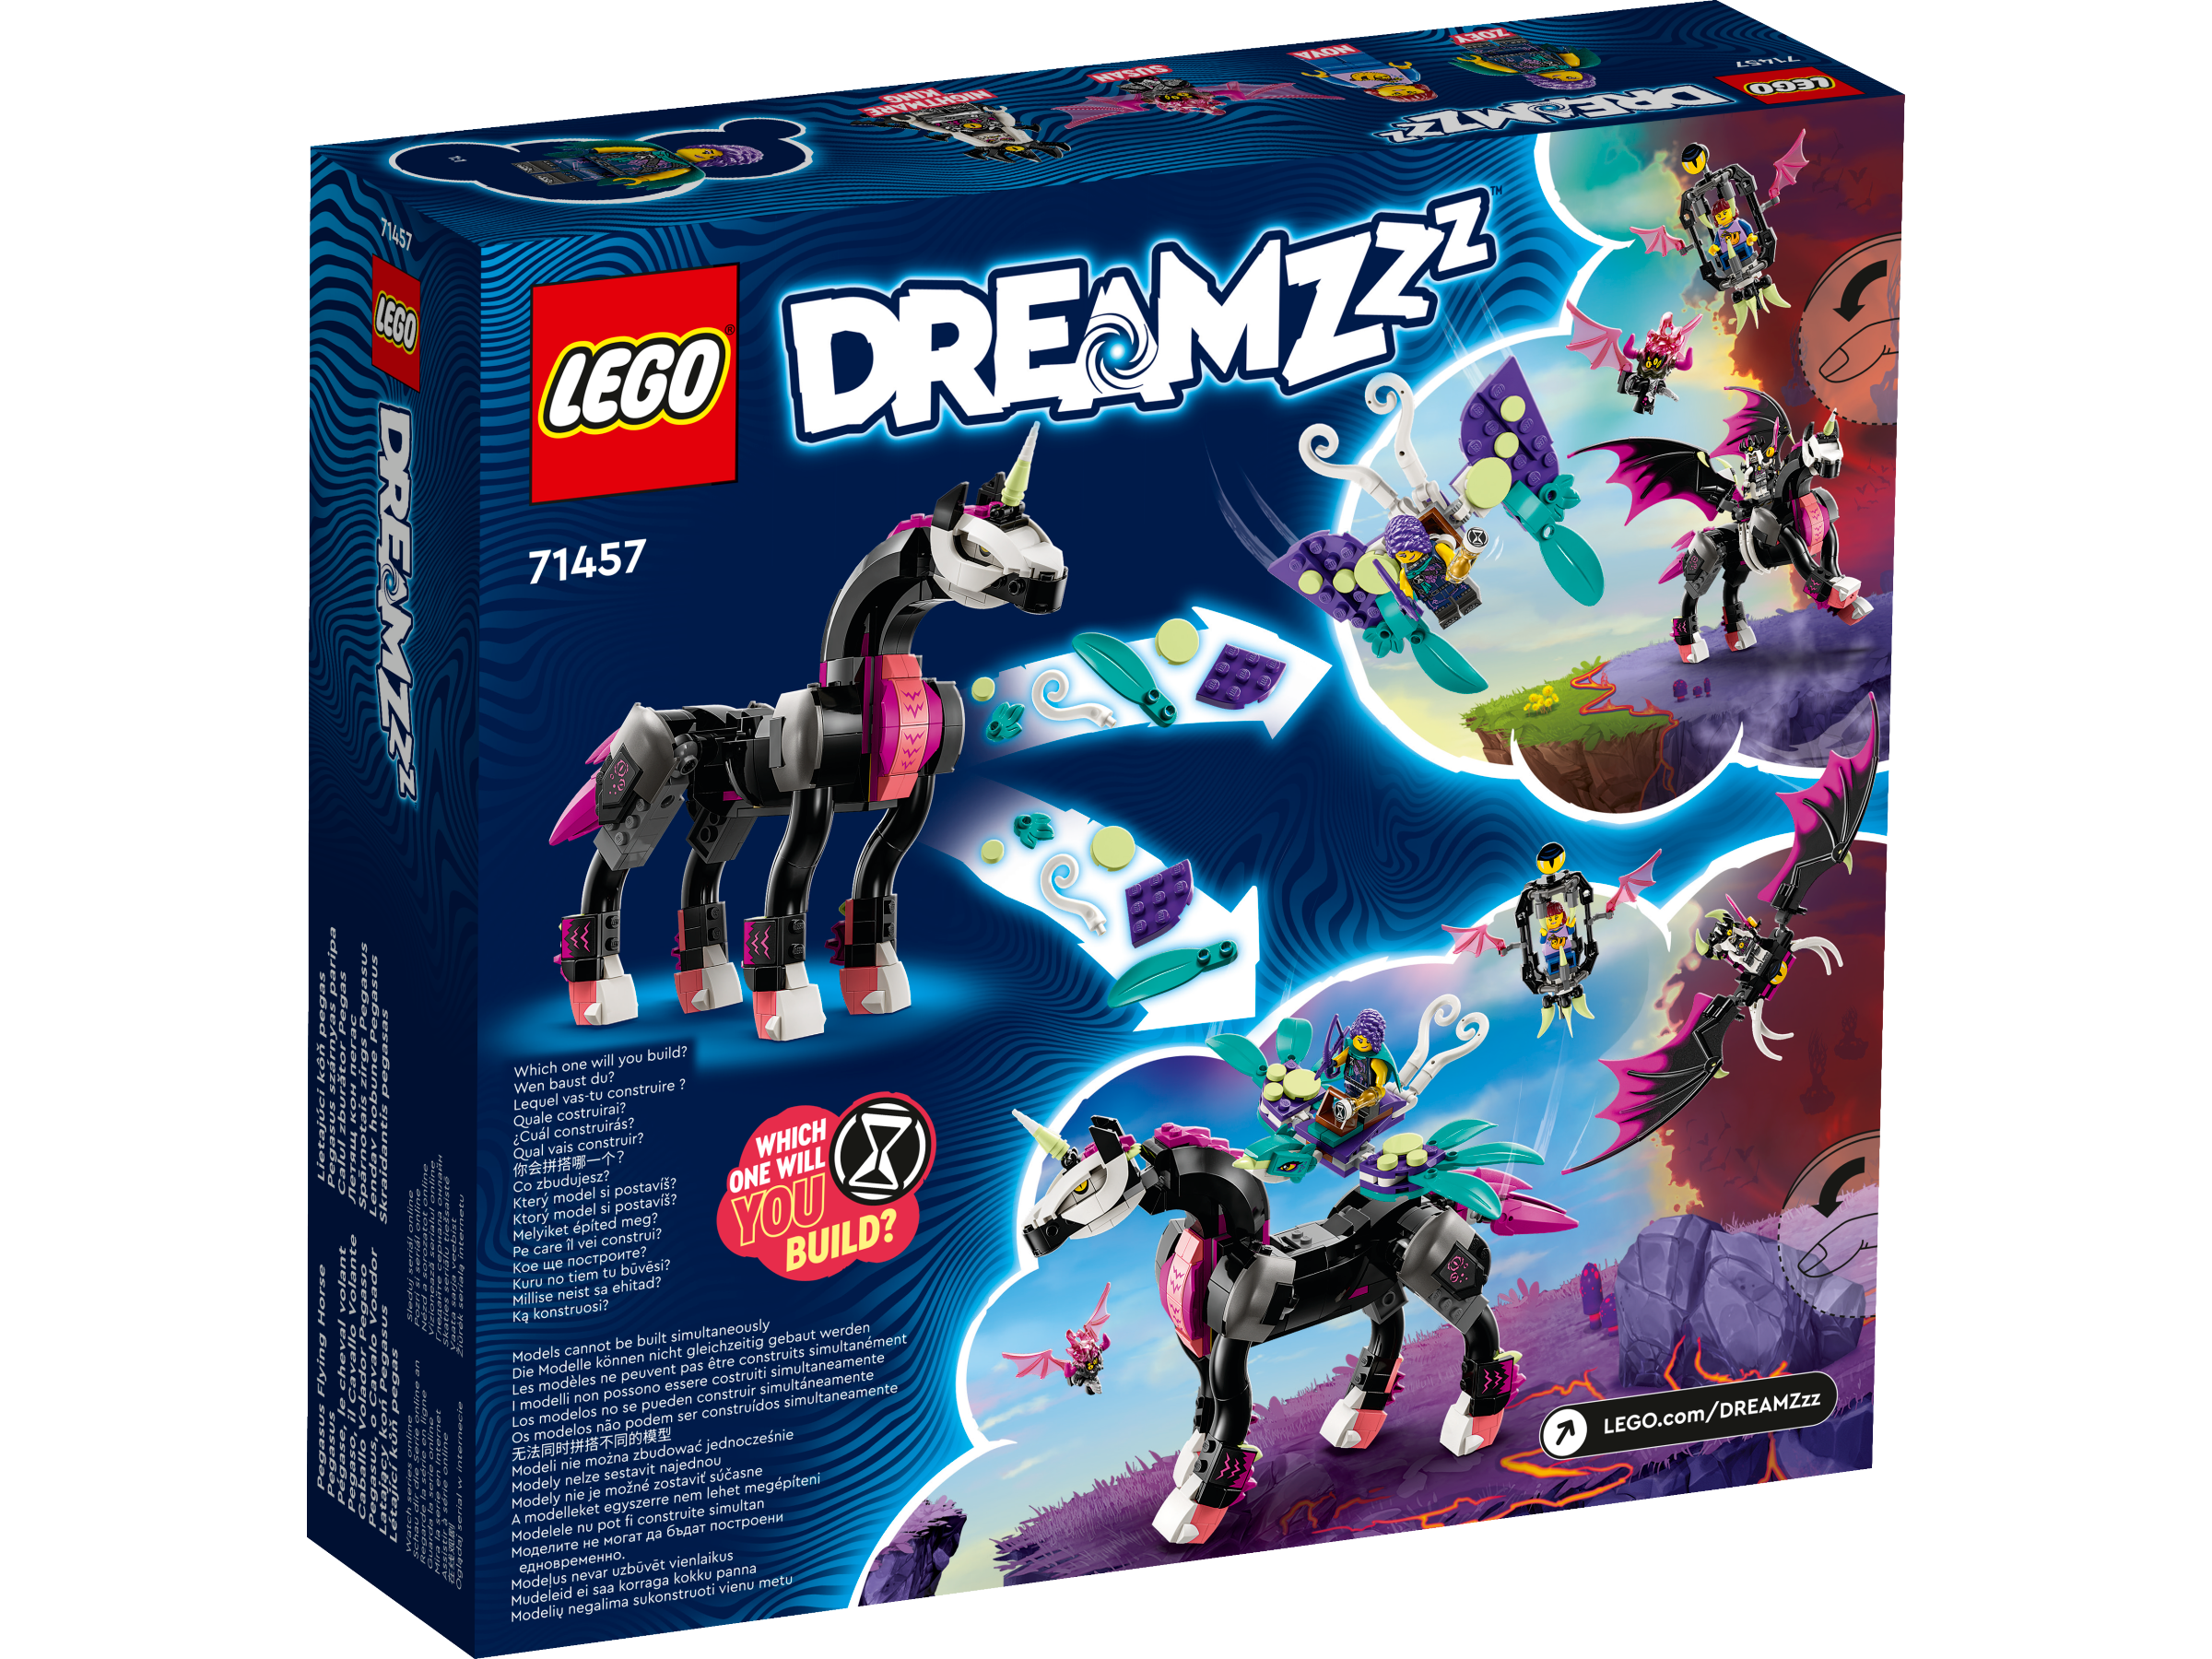 Lego 71457 Pegasus Flying Horse